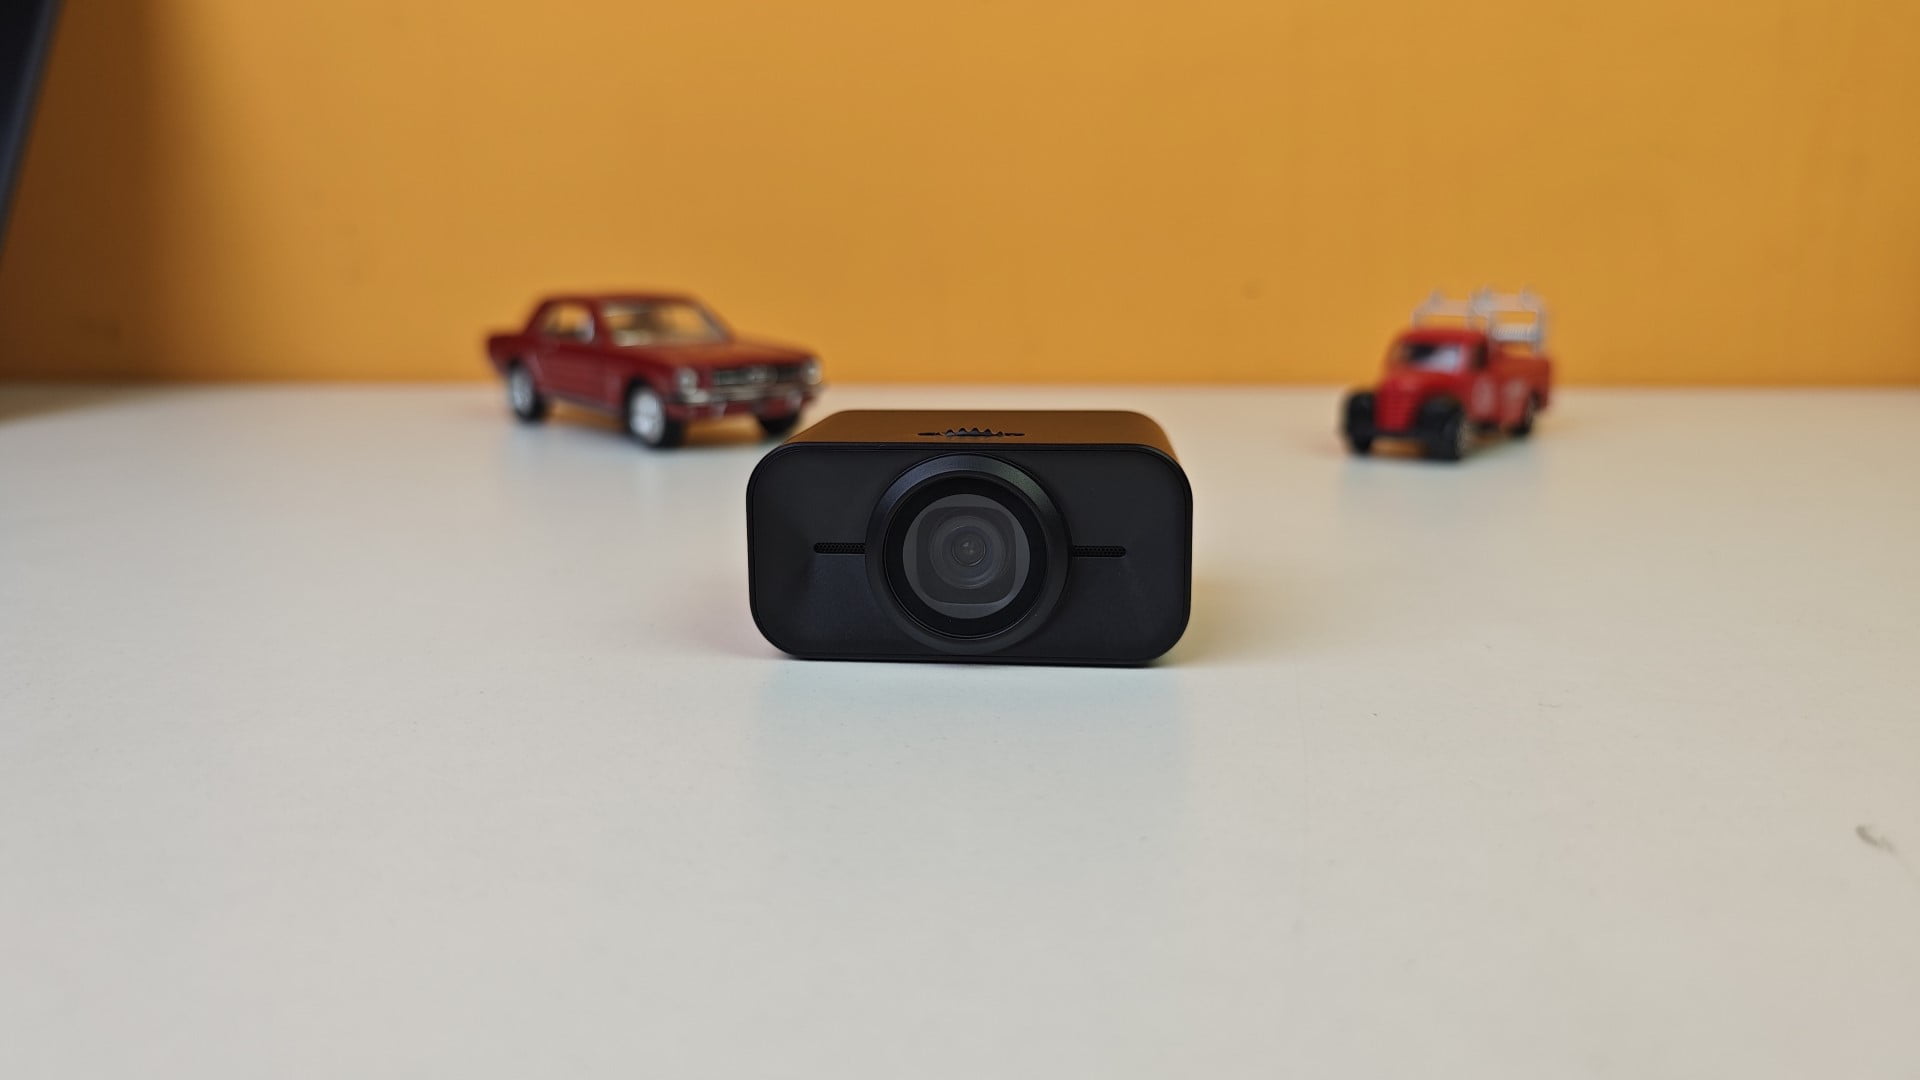 EPOS Expand Vision 1 webcam review